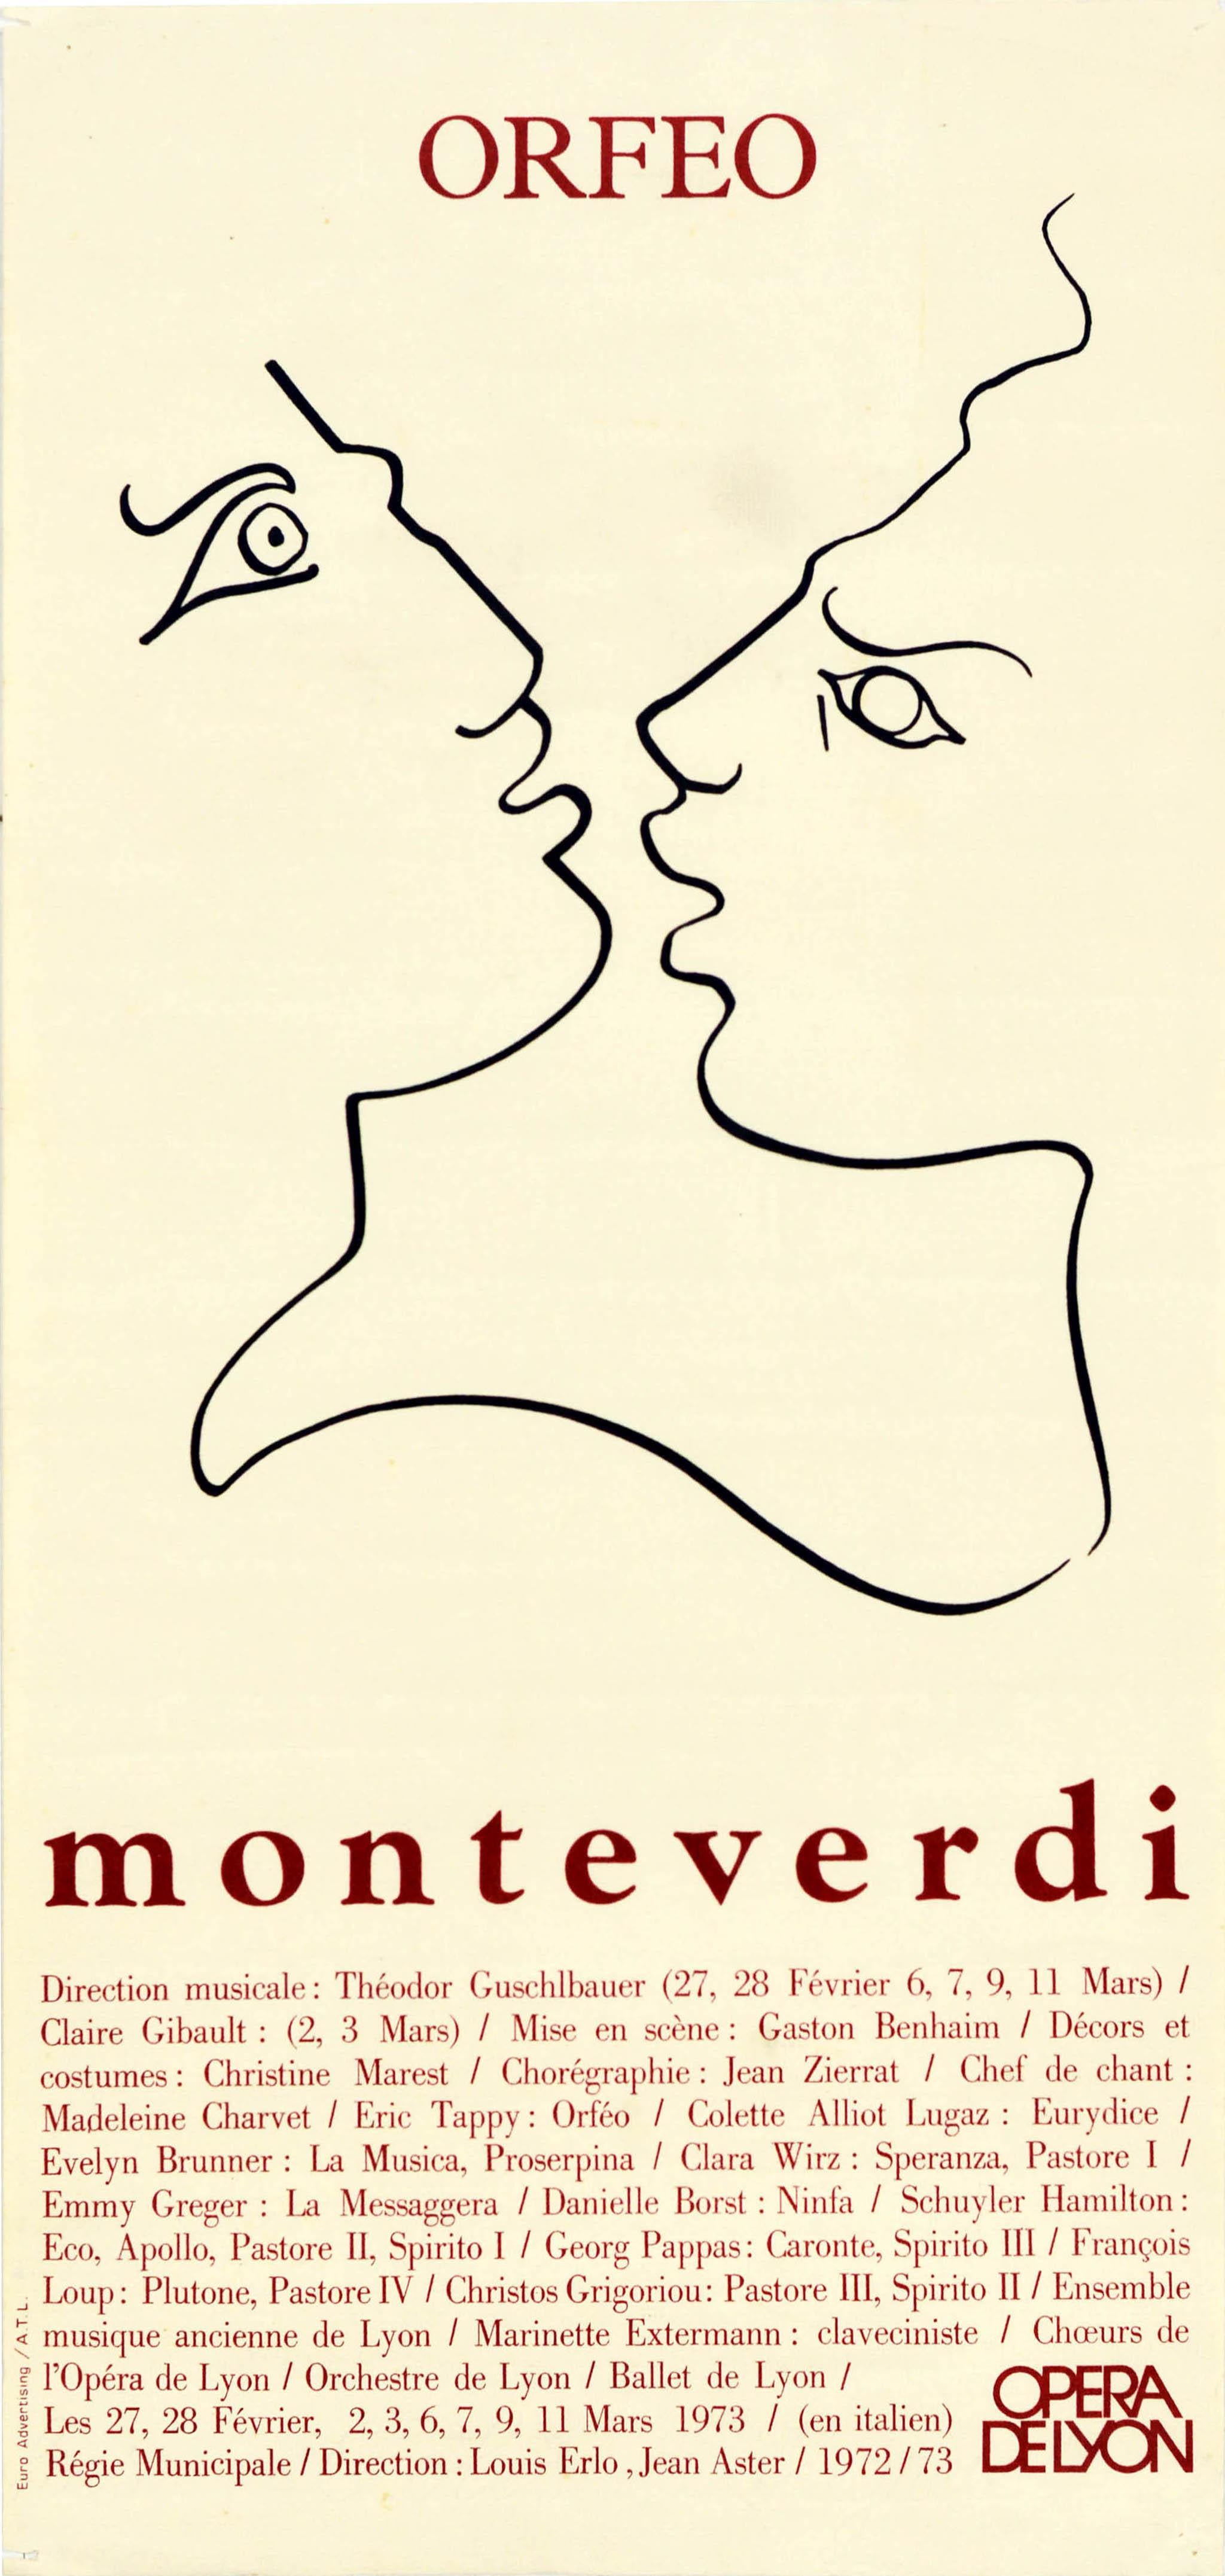 Print Unknown - Affiche vintage d'origine Orfeo Monteverdi Opera De Lyon Musique Légende grecque